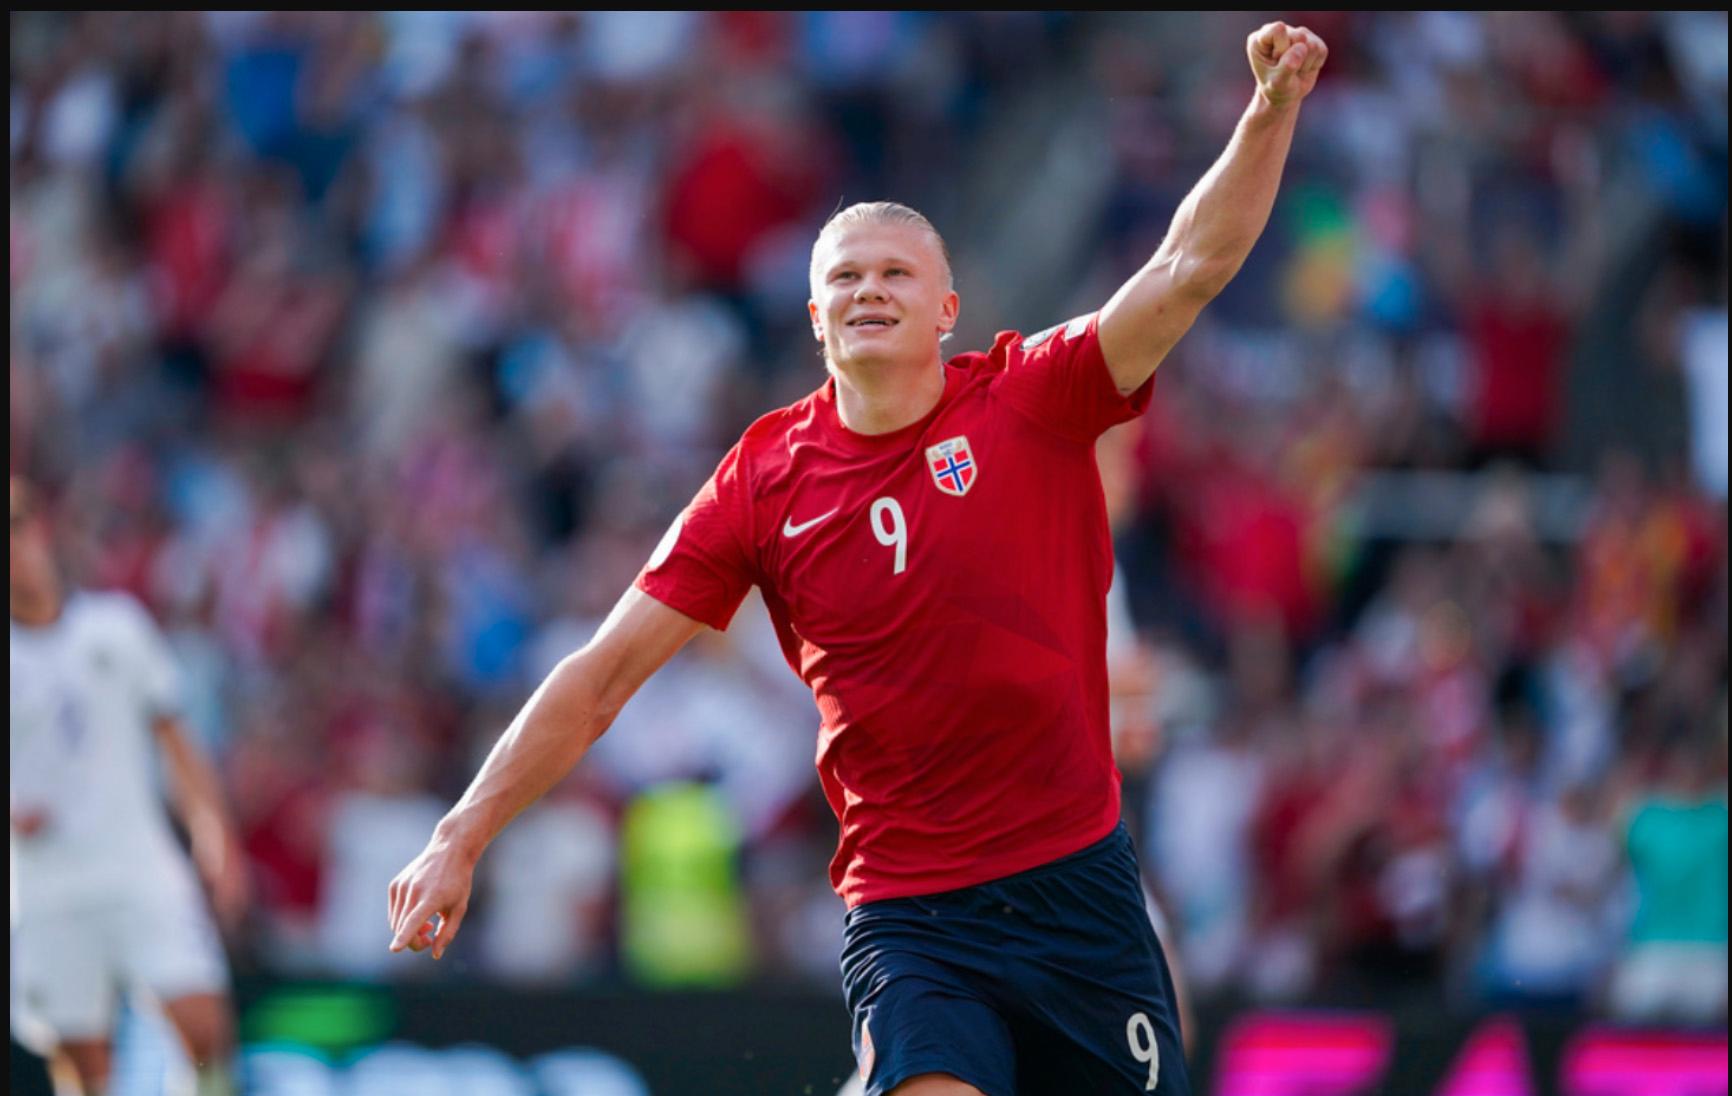 Norske Erling Braut Haaland rankas som en av världens bästa fotbollsspelare.